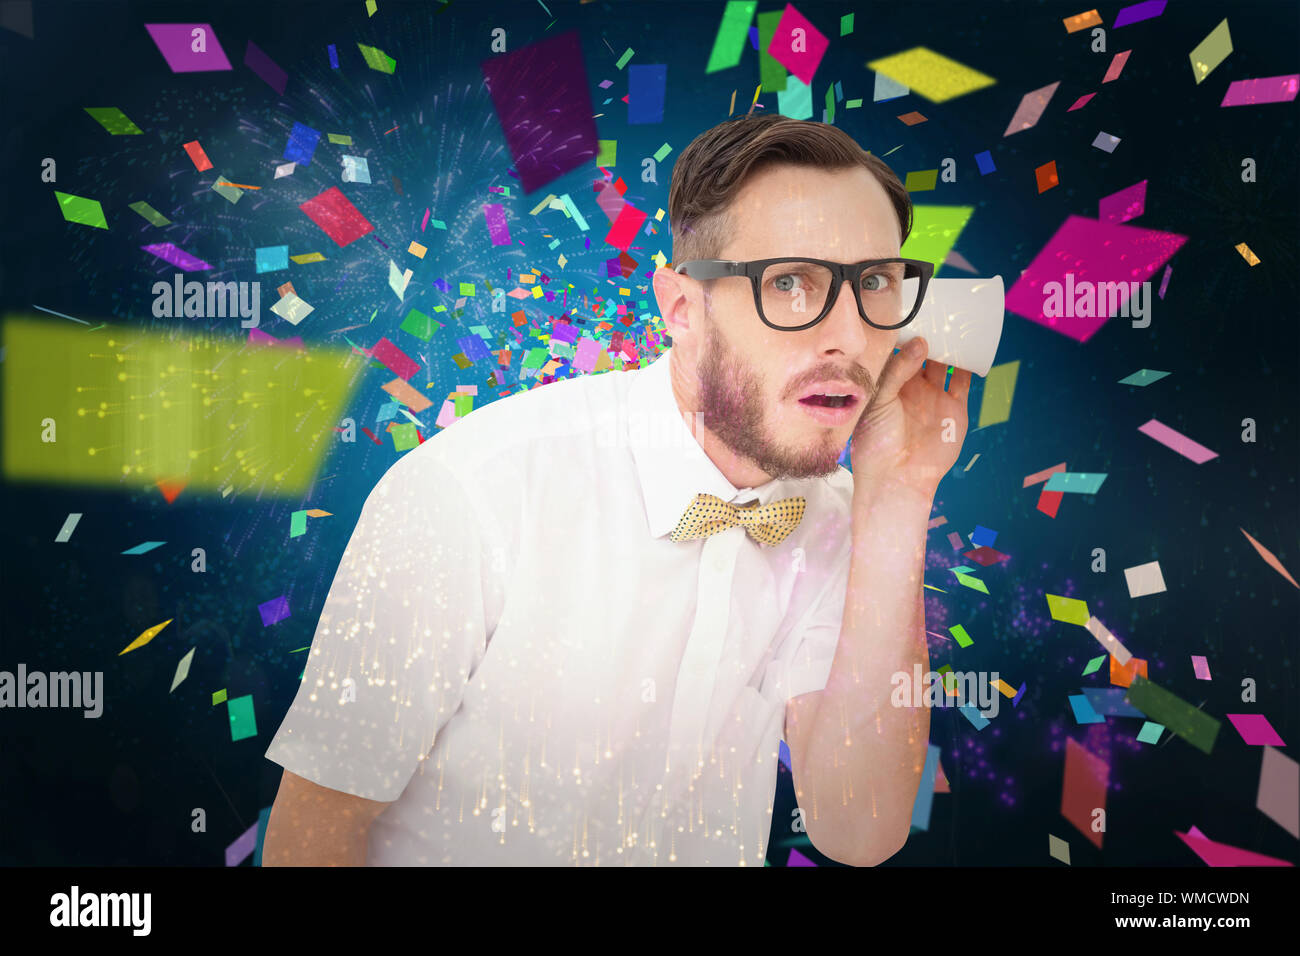 Geeky imprenditore intercettazioni con la coppa contro coloratissimi fuochi d'artificio impazza su sfondo nero Foto Stock